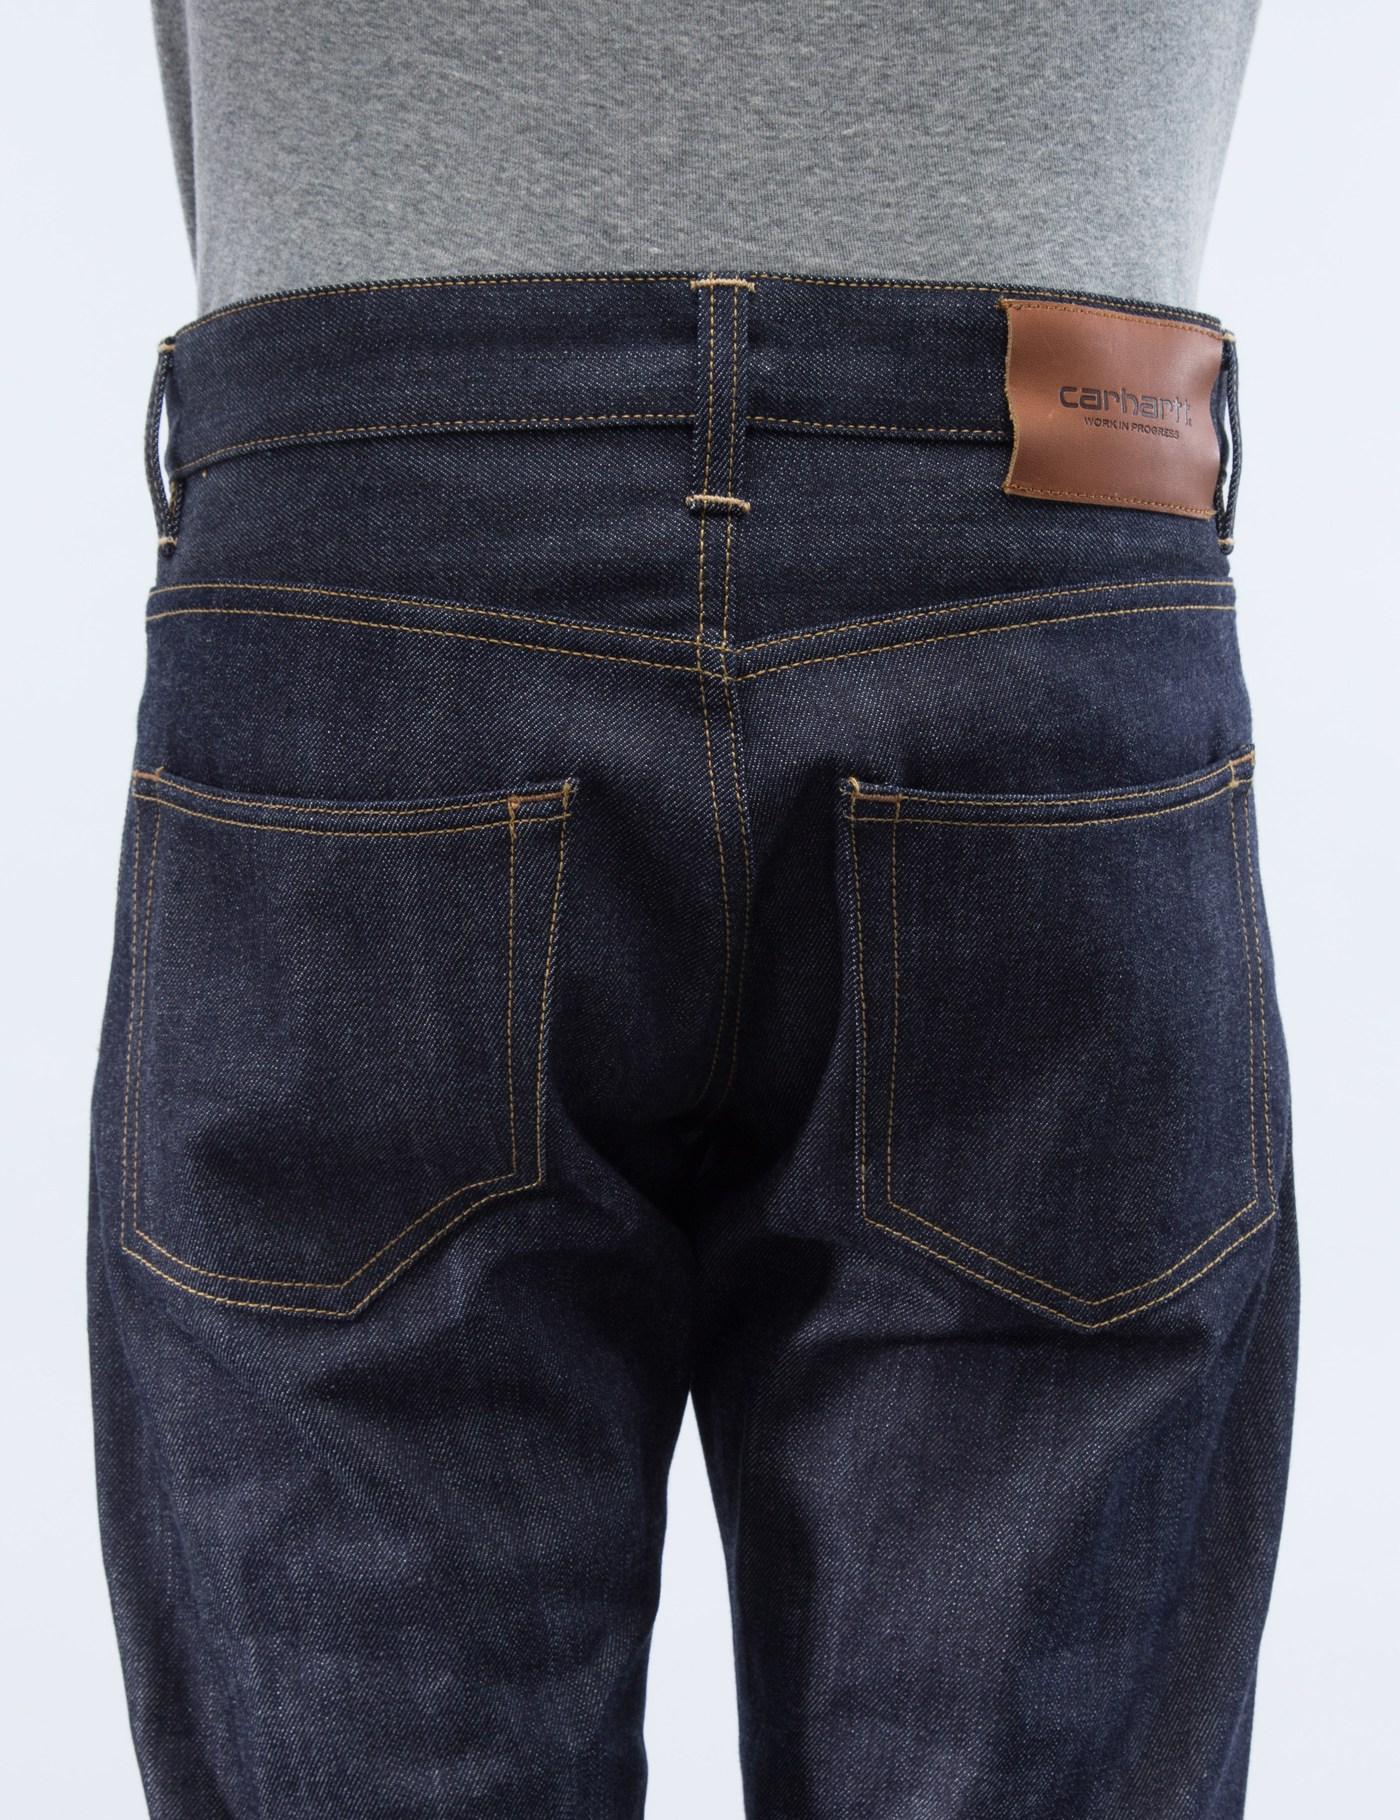 Carhartt WIP Denim Rigid Klondike Selvedge Jeans for Men - Lyst